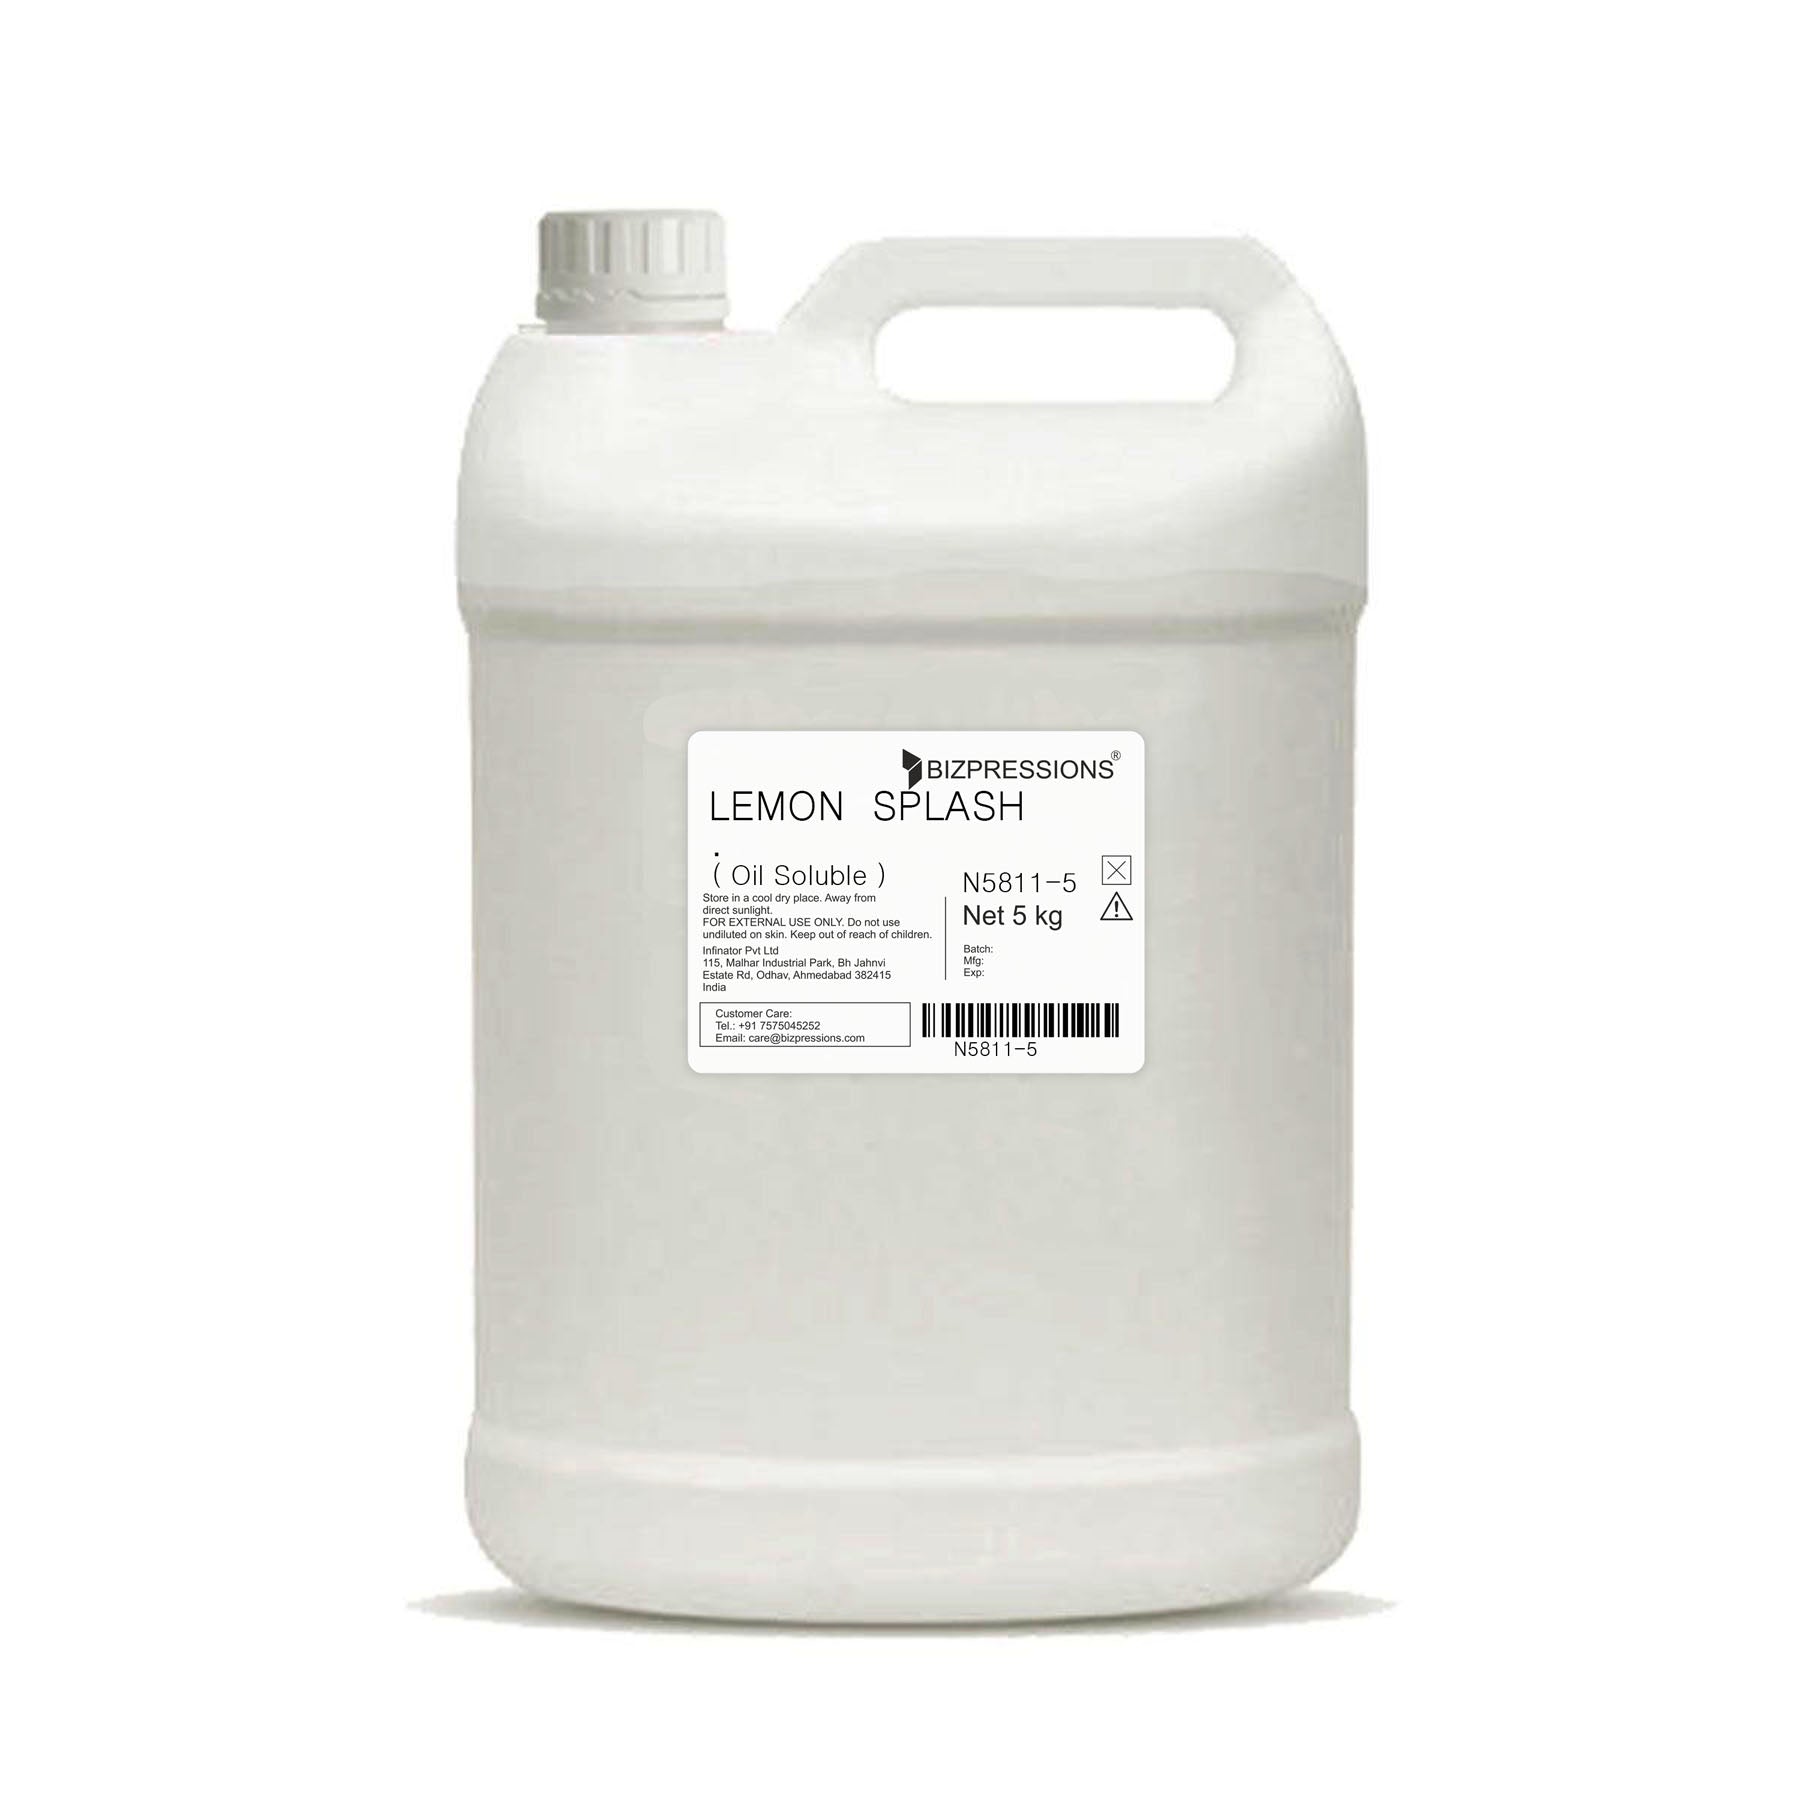 LEMON SPLASH - Fragrance ( Oil Soluble ) - 5 kg